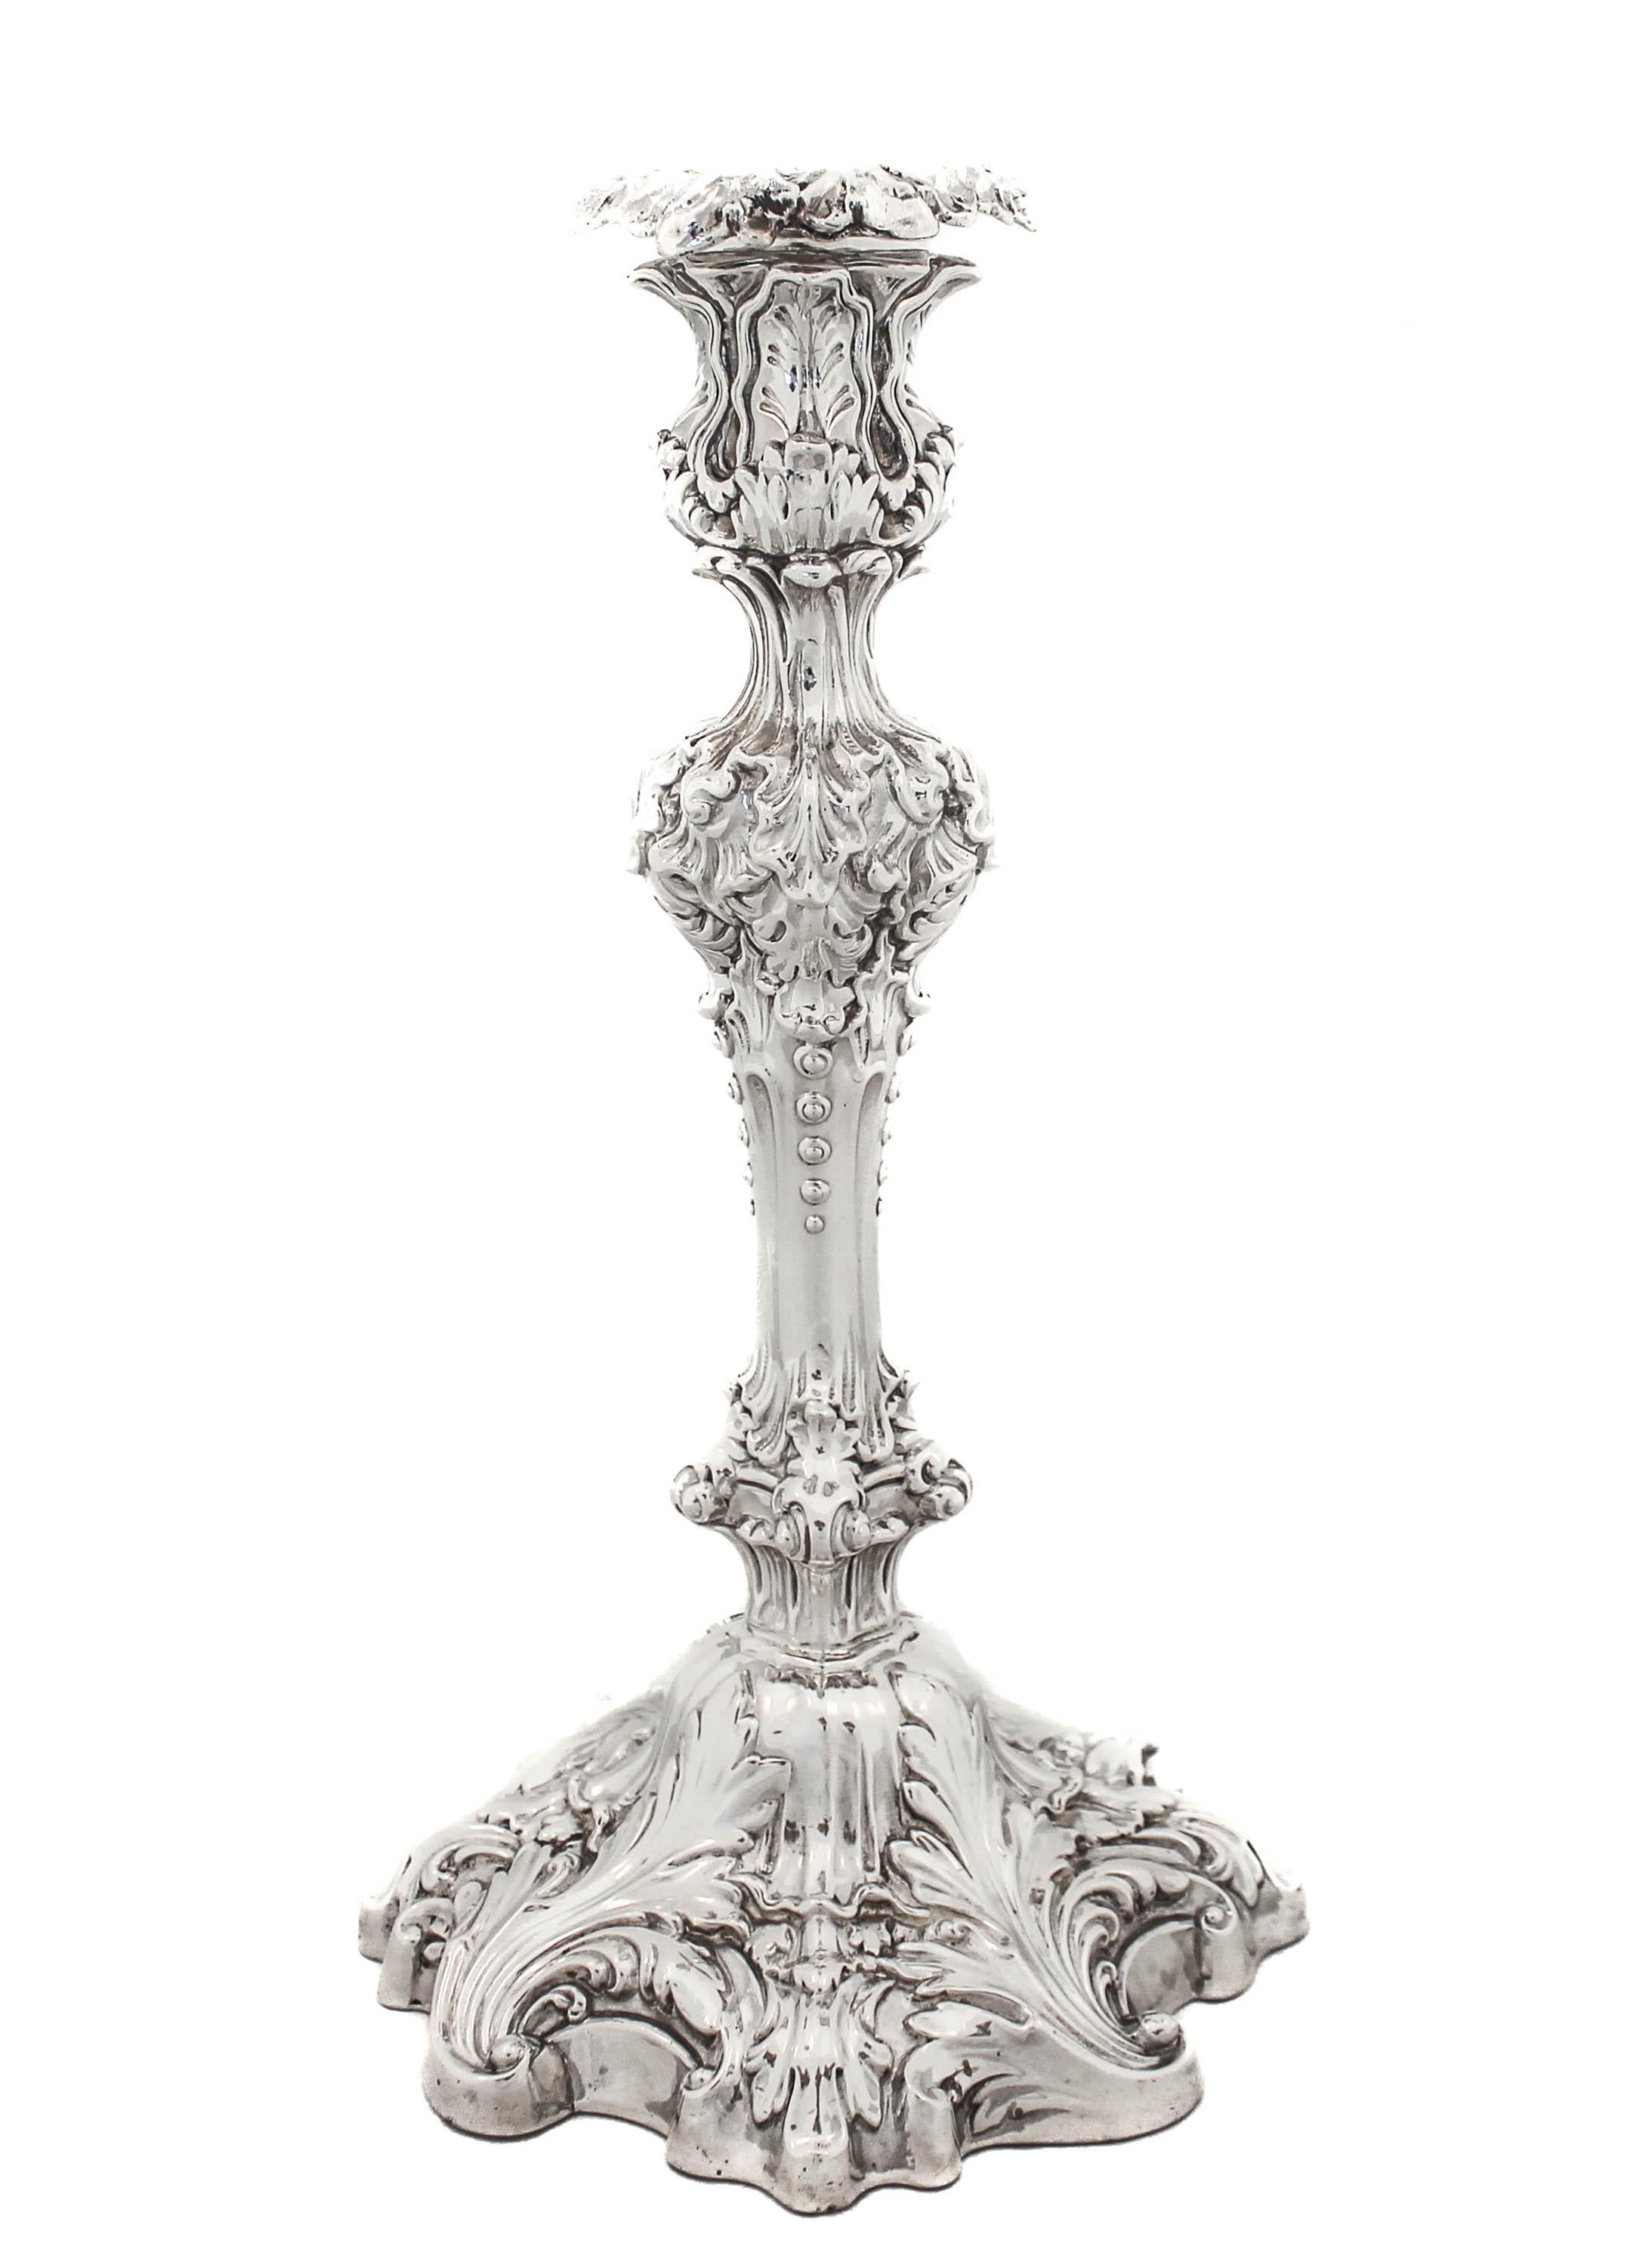 Nous vous proposons une paire de chandeliers en argent sterling de Frank W. Smith Silver.  Elles sont conçues dans le style rococo.  Avec leur travail élaboré et leurs détails incroyables, ces chandeliers font sensation ! Ils sont exceptionnellement